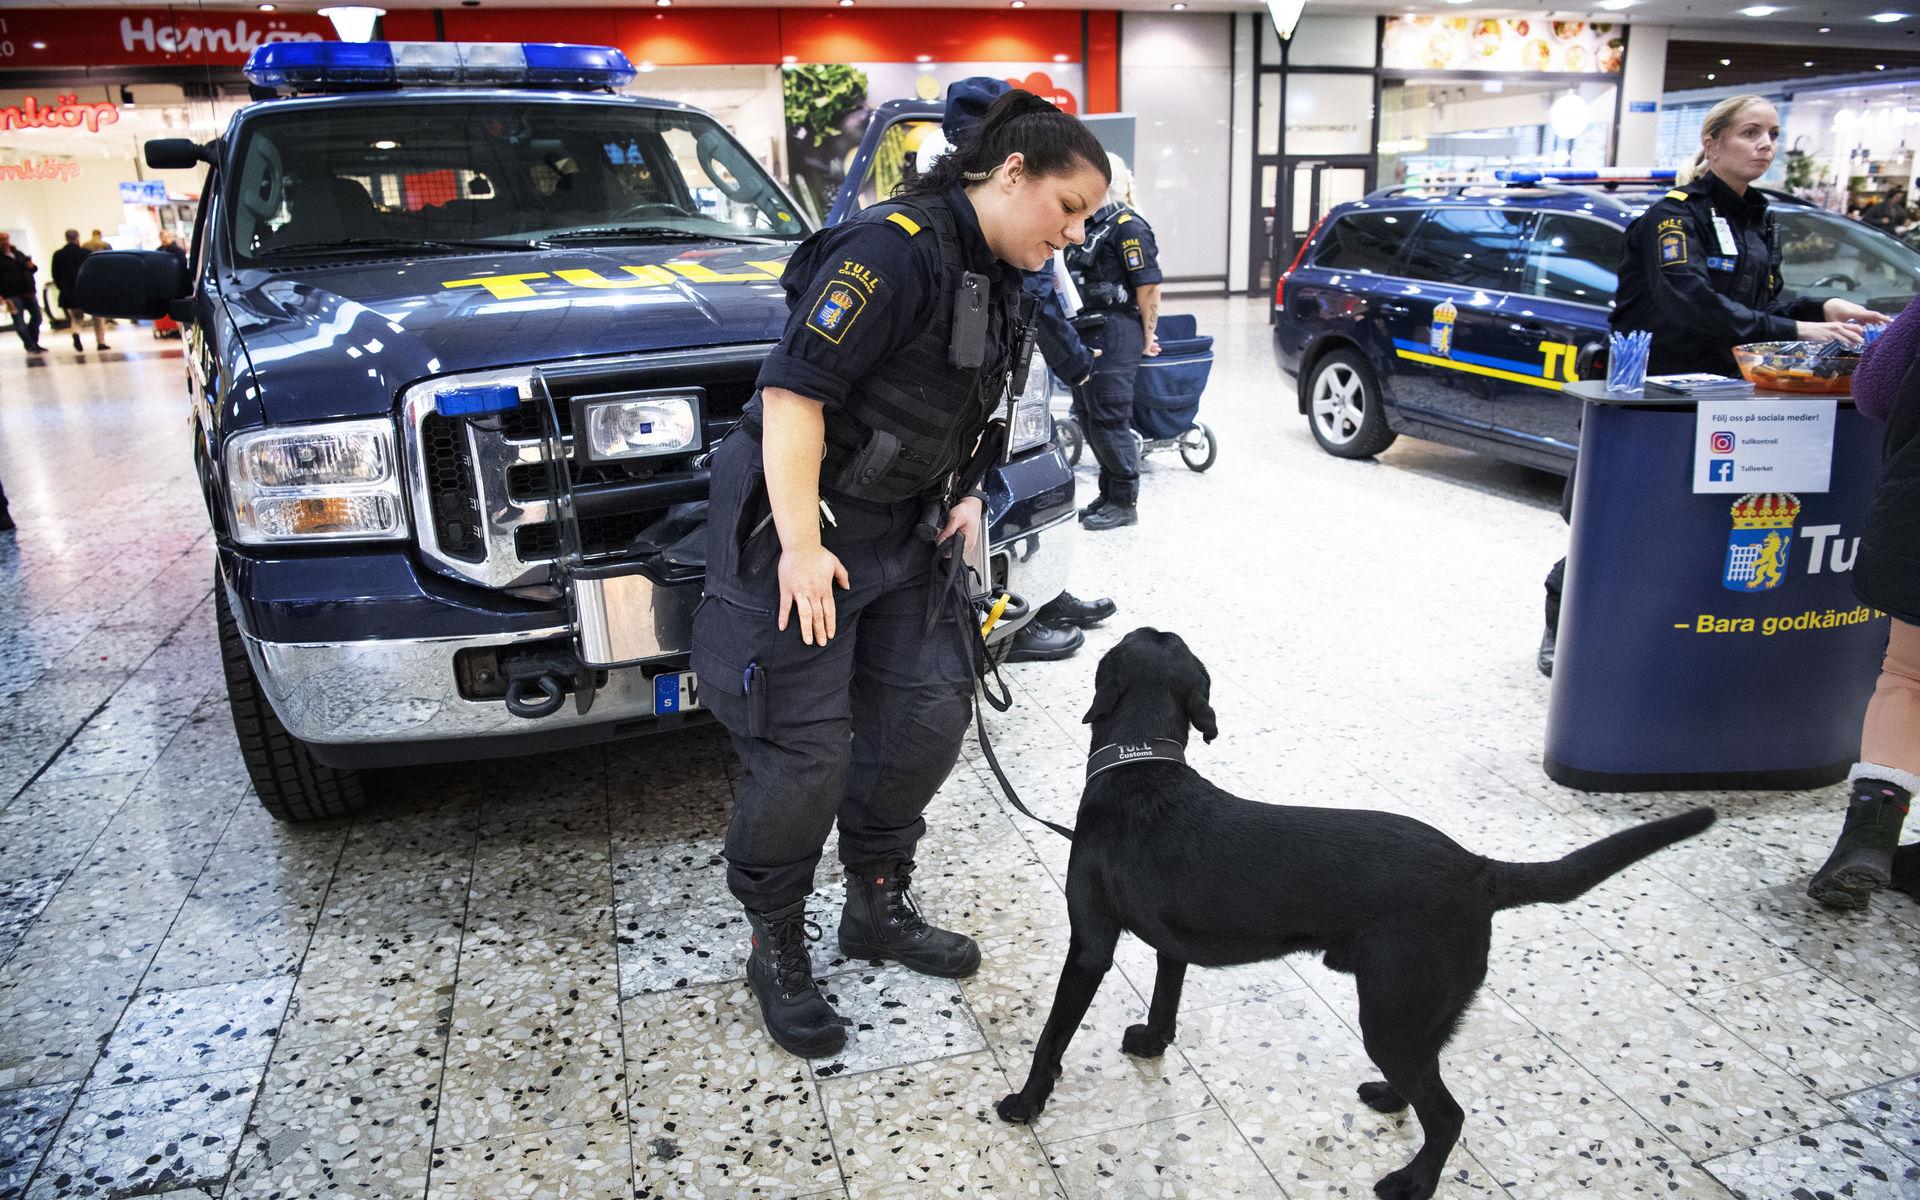 Annelie Lengfelt är hundförare på Tullverket och har med hjälp av labradoren Harry kunnat avslöja större partier narkotika som kriminella försökt smuggla in i Sverige.